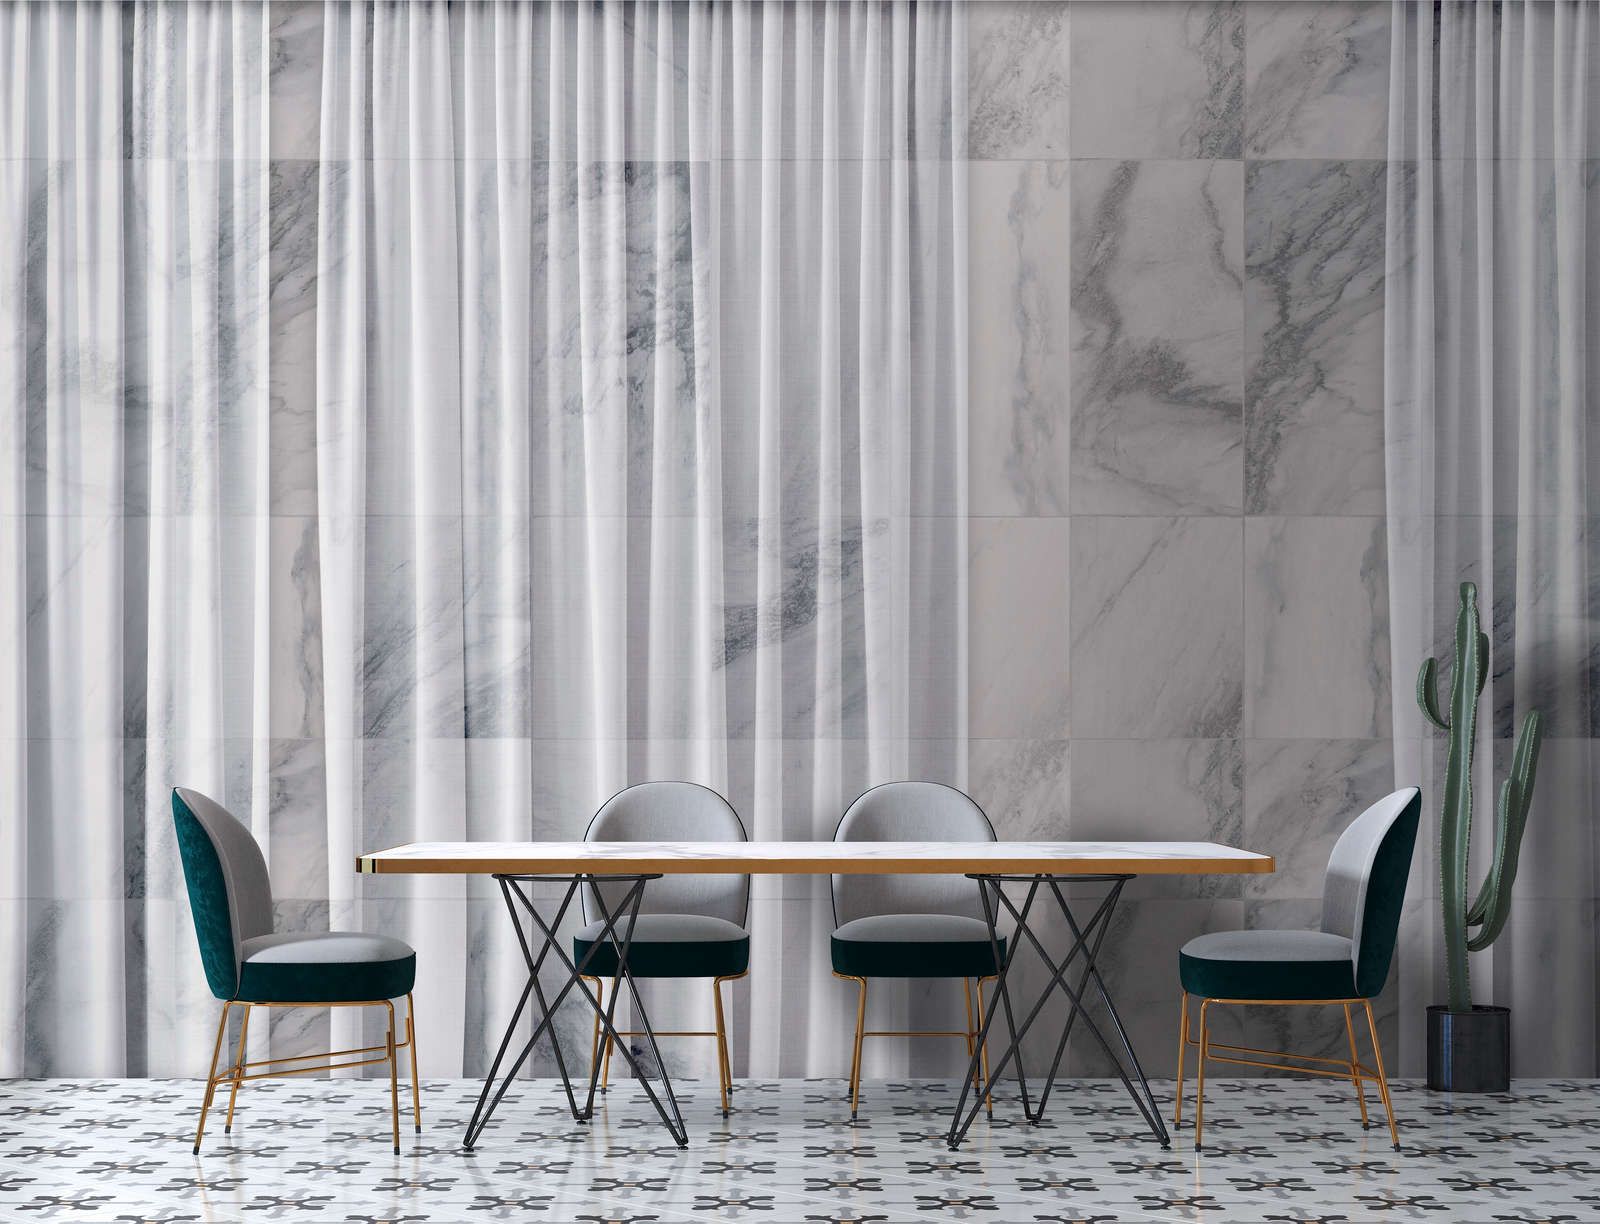             Digital behang »nova 1« - Subtiel vallend wit gordijn voor marmeren muur - Gladde, licht glanzende premium non-woven stof
        